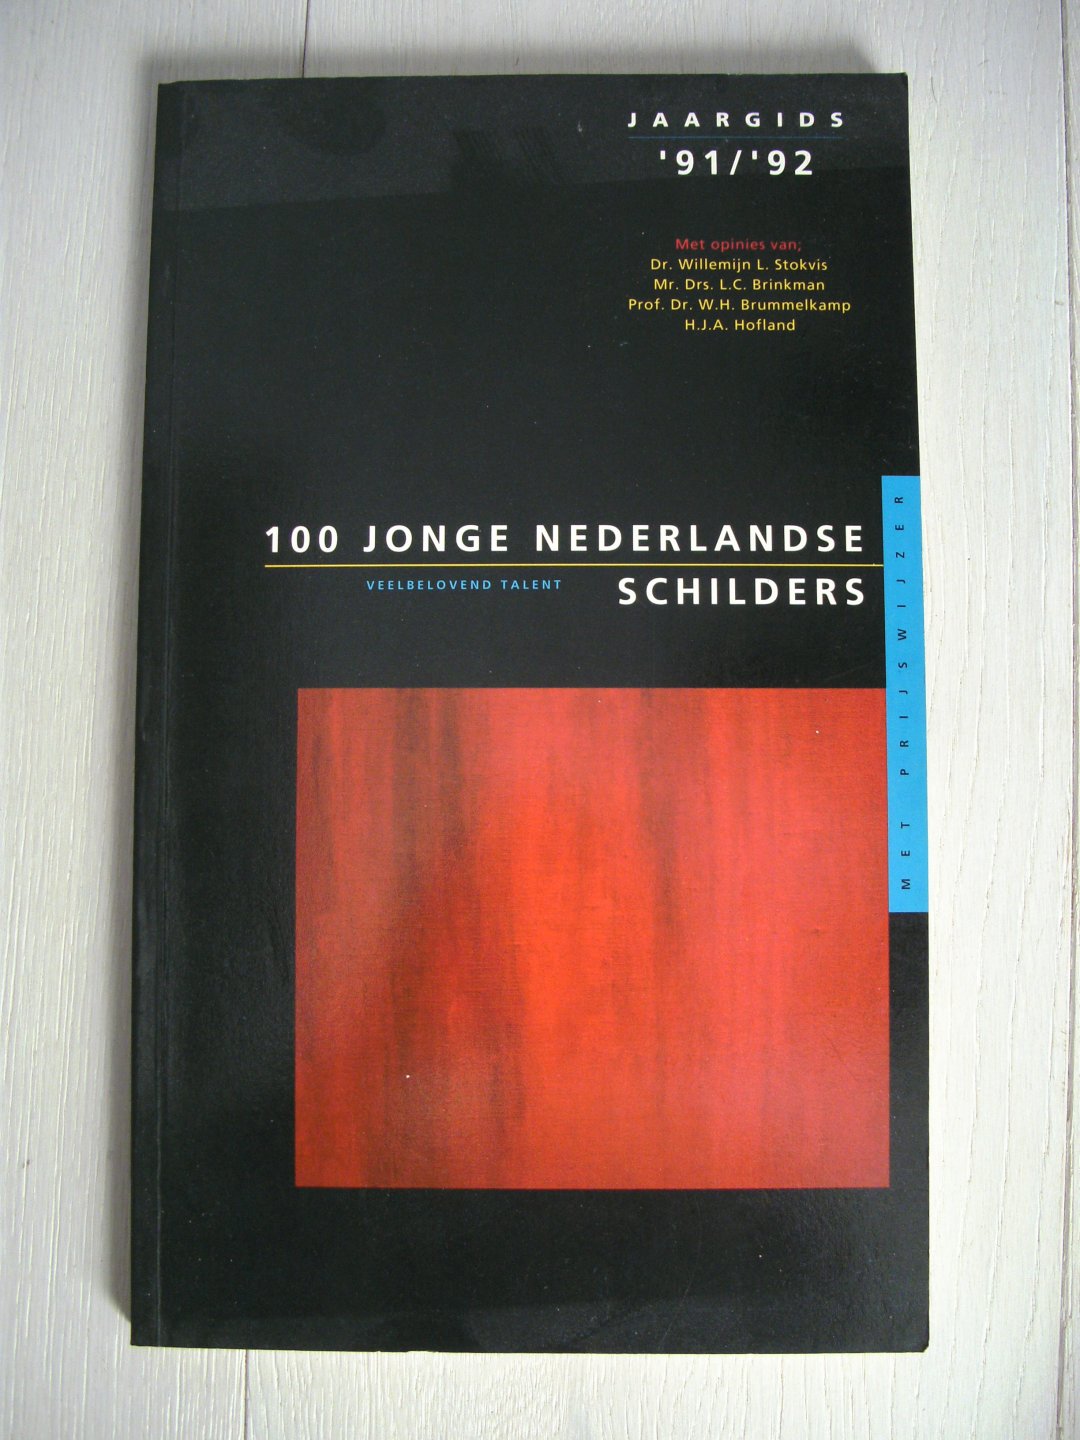  - Jaargids / 1991/92 100 jonge nederl. schilders / druk 1